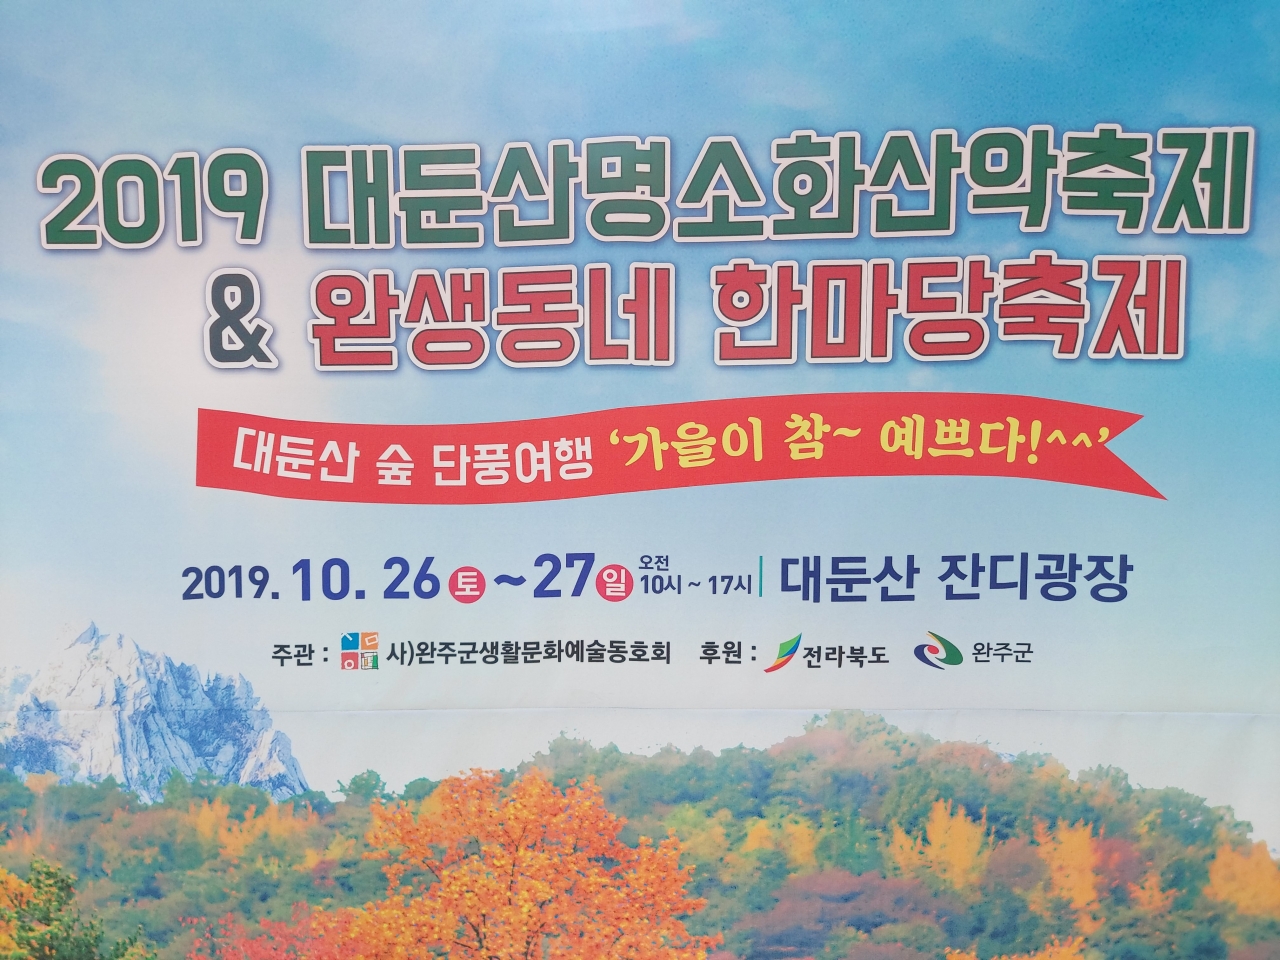 2019 대둔산 명소화 산악 축제 & 완생동네 한마당 축제가 열리고 있다